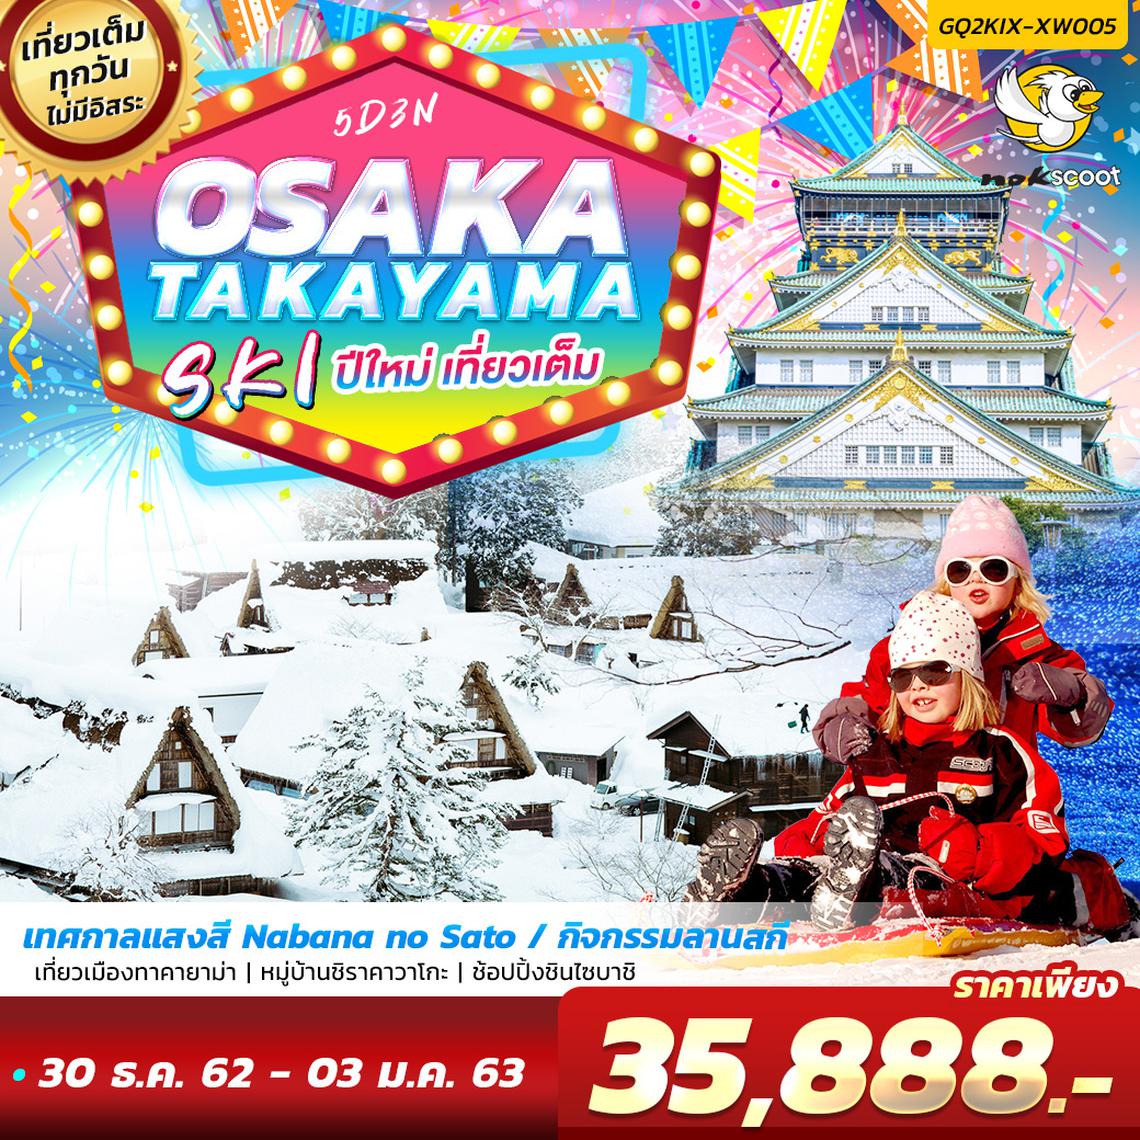  ทัวร์ญี่ปุ่นปีใหม่ OSAKA TAKAYAMA SKI ปีใหม่ เที่ยวเต็ม 5 วัน 3 คืน โดยสายการบินนกสกู๊ต (XW)